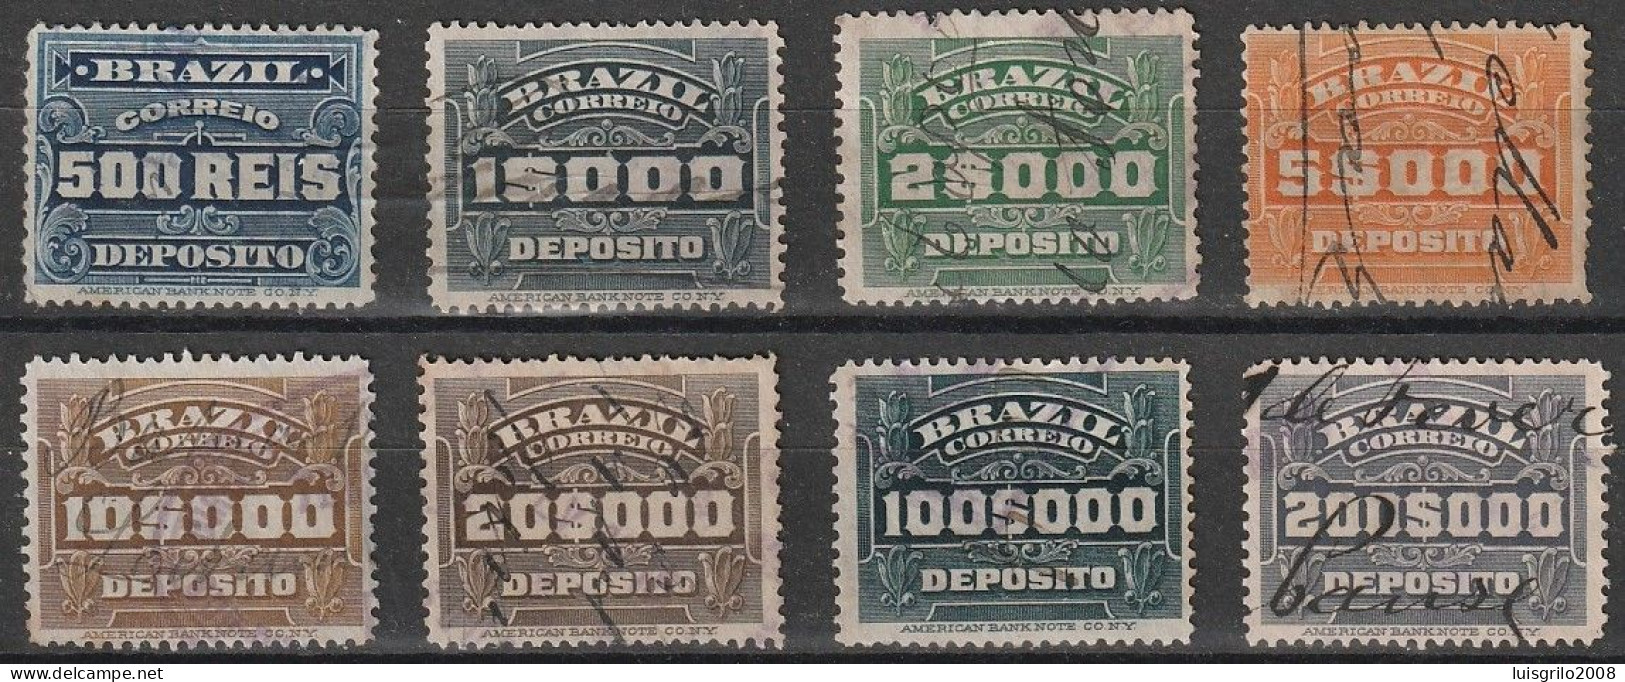 Revenue/ Fiscaux, Brazil 1920 - Depósito, Receita Fiscal -|- 500 Rs, 1$000, 2$000, 5$000, 10$000, 20$000, 100$000, 200$0 - Postage Due